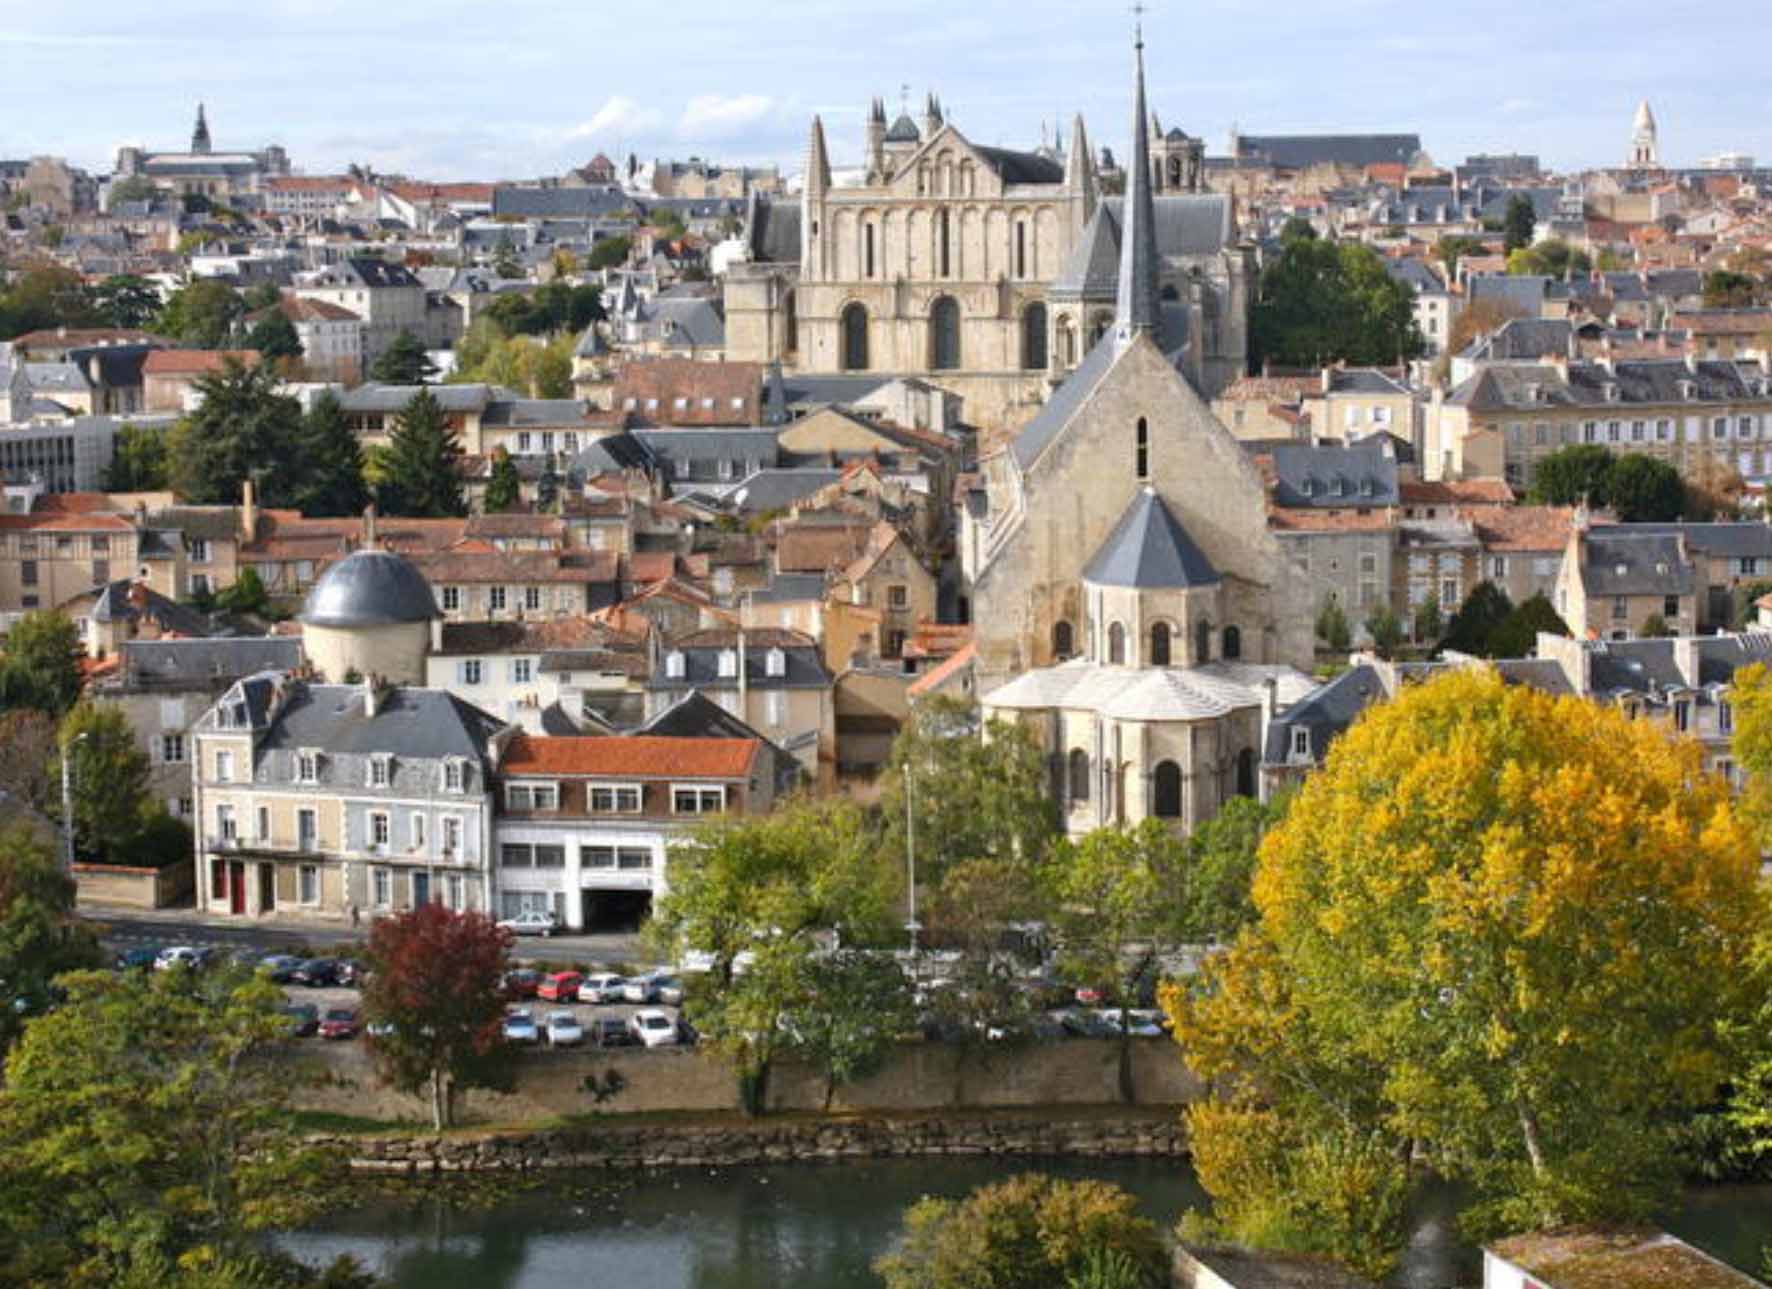 Stipendiranje razmjene studenata na Poitiers univerzitetu u Francuskoj